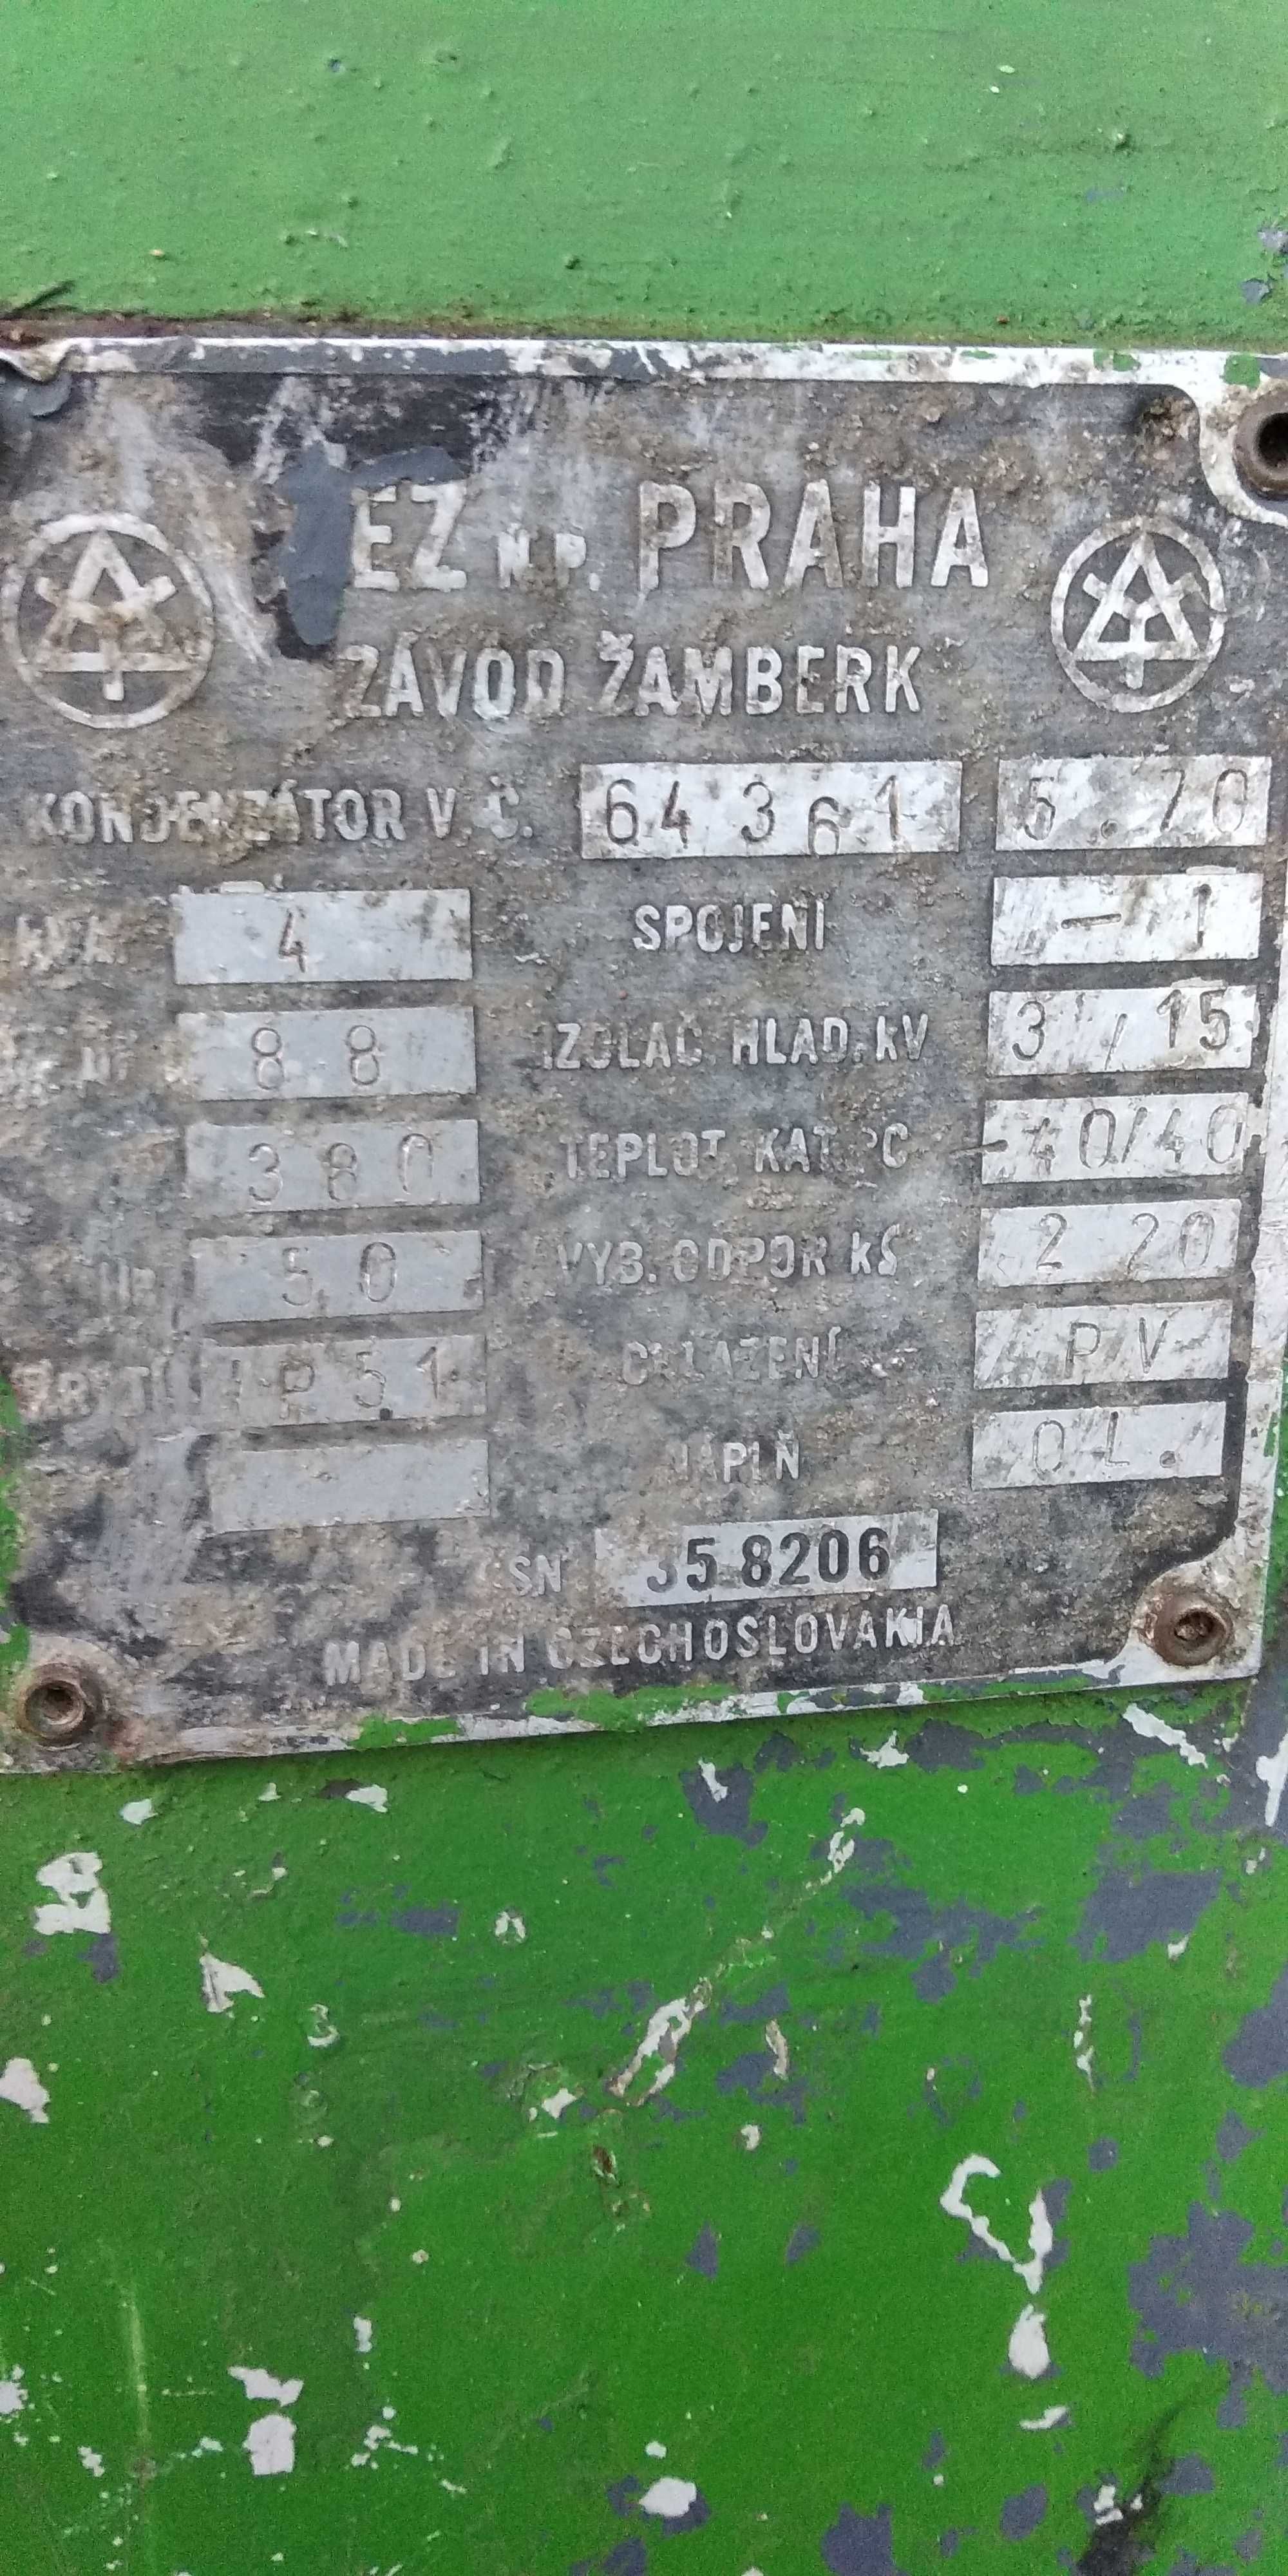 Запускатель,конденсатор Чехословакия, трансформатор.